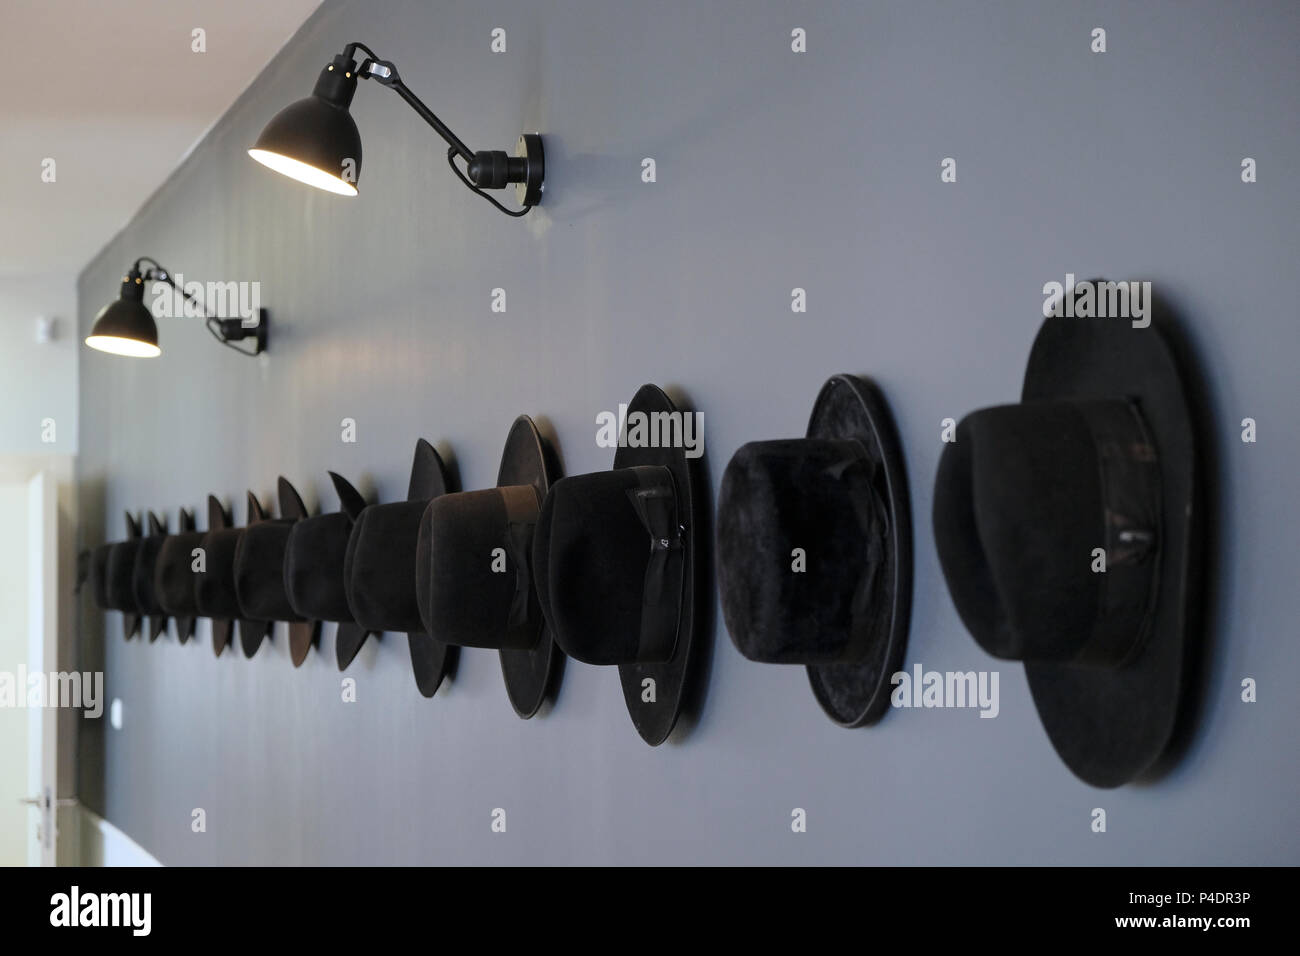 Tradizionale cappello nero Haredi appeso su un muro in un corridoio di un edificio di uffici nella città di Bnei Brak o bene Beraq un centro di Haredi giudaismo in Israele Foto Stock